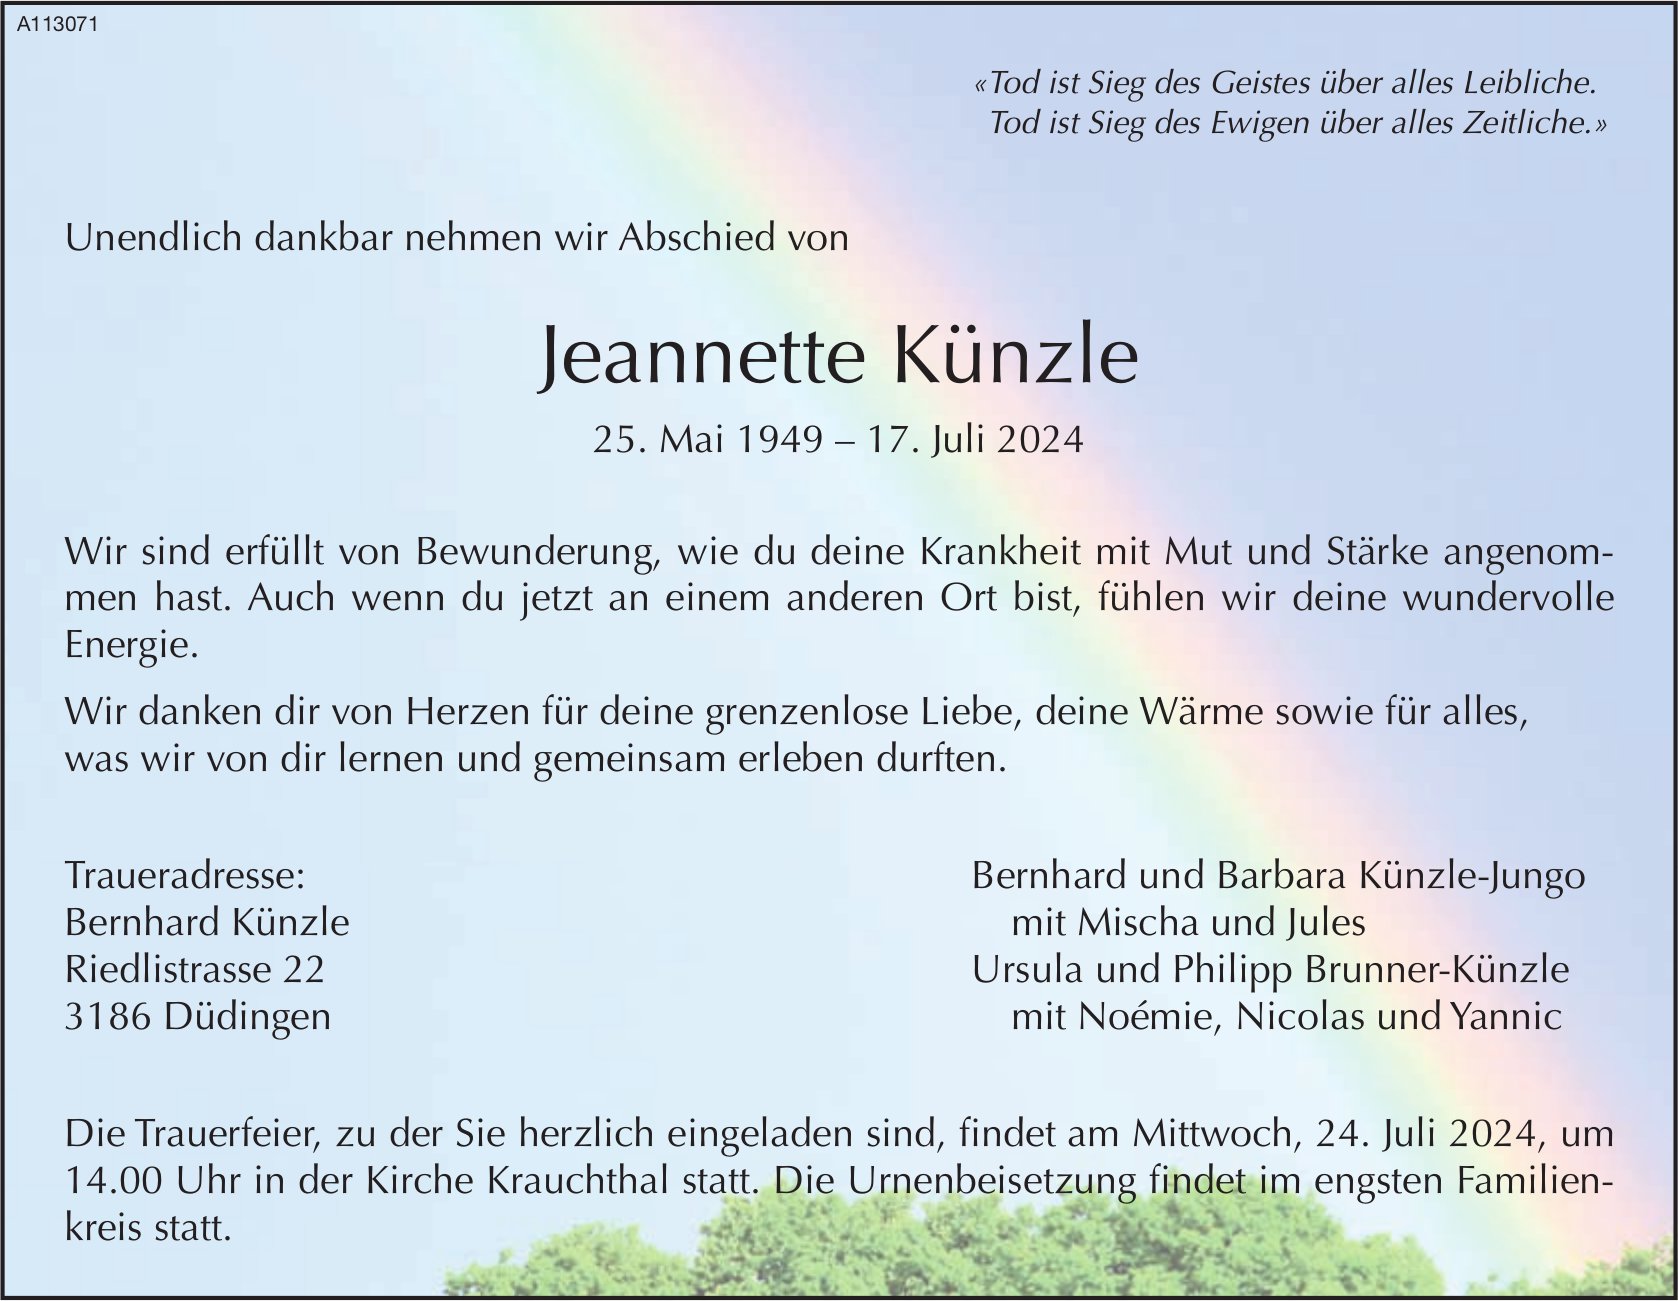 Jeannette Künzle, Juli 2024 / TA